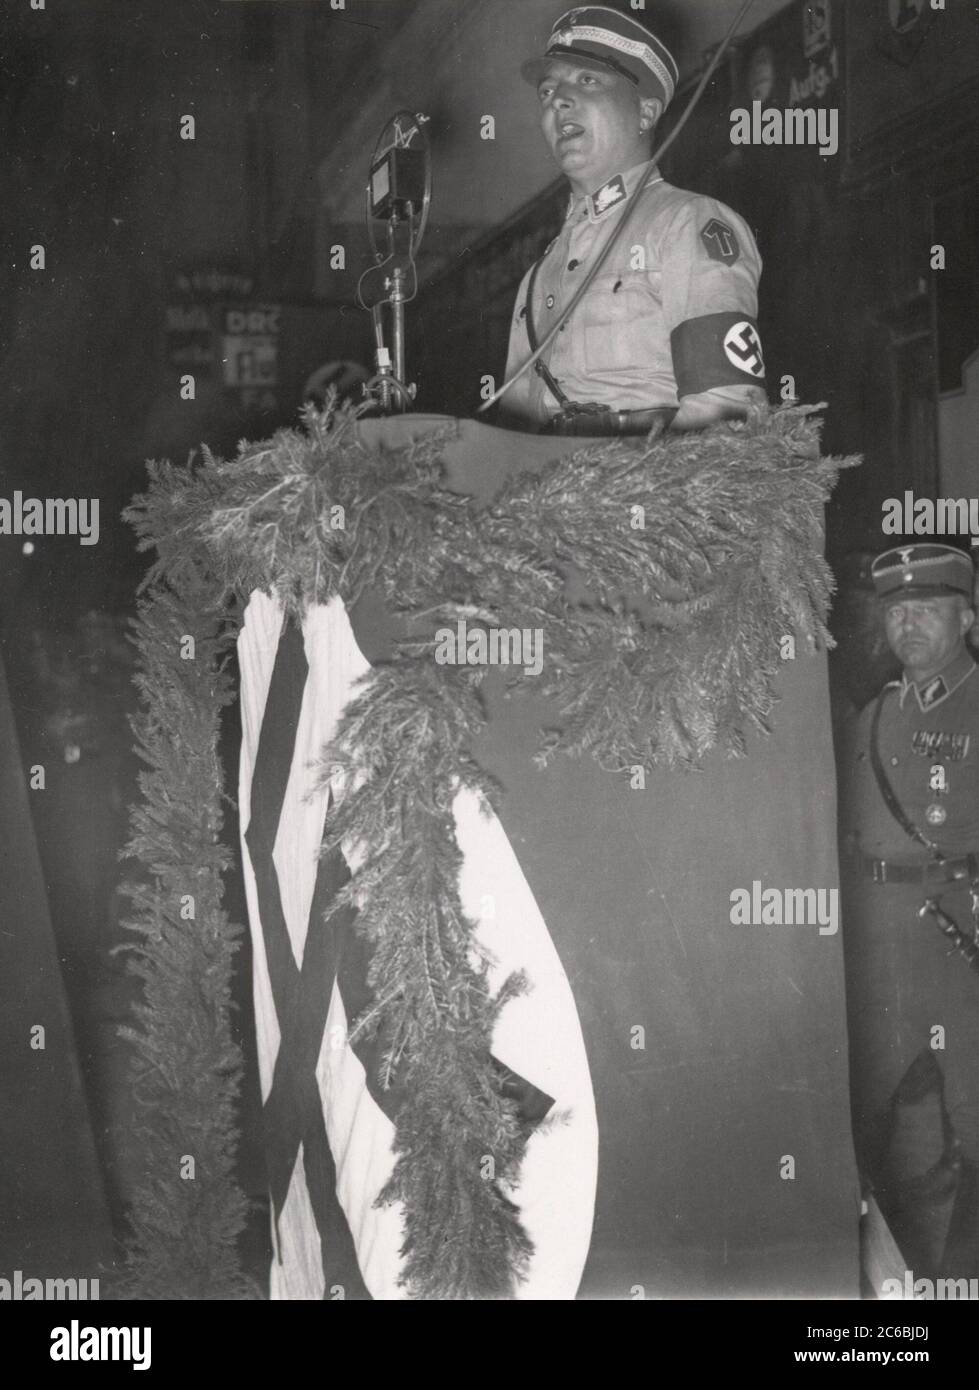 Grundsteinlegung durch Rudolf Hess - Kundgebung und Fahnenweihe in Frankfurt / oder Heinrich Hoffmann Fotografien 1934 Adolf Hitlers offizieller Fotograf und Nazi-Politiker und Verleger, der Mitglied des intime Hitlerkreises war. Stockfoto